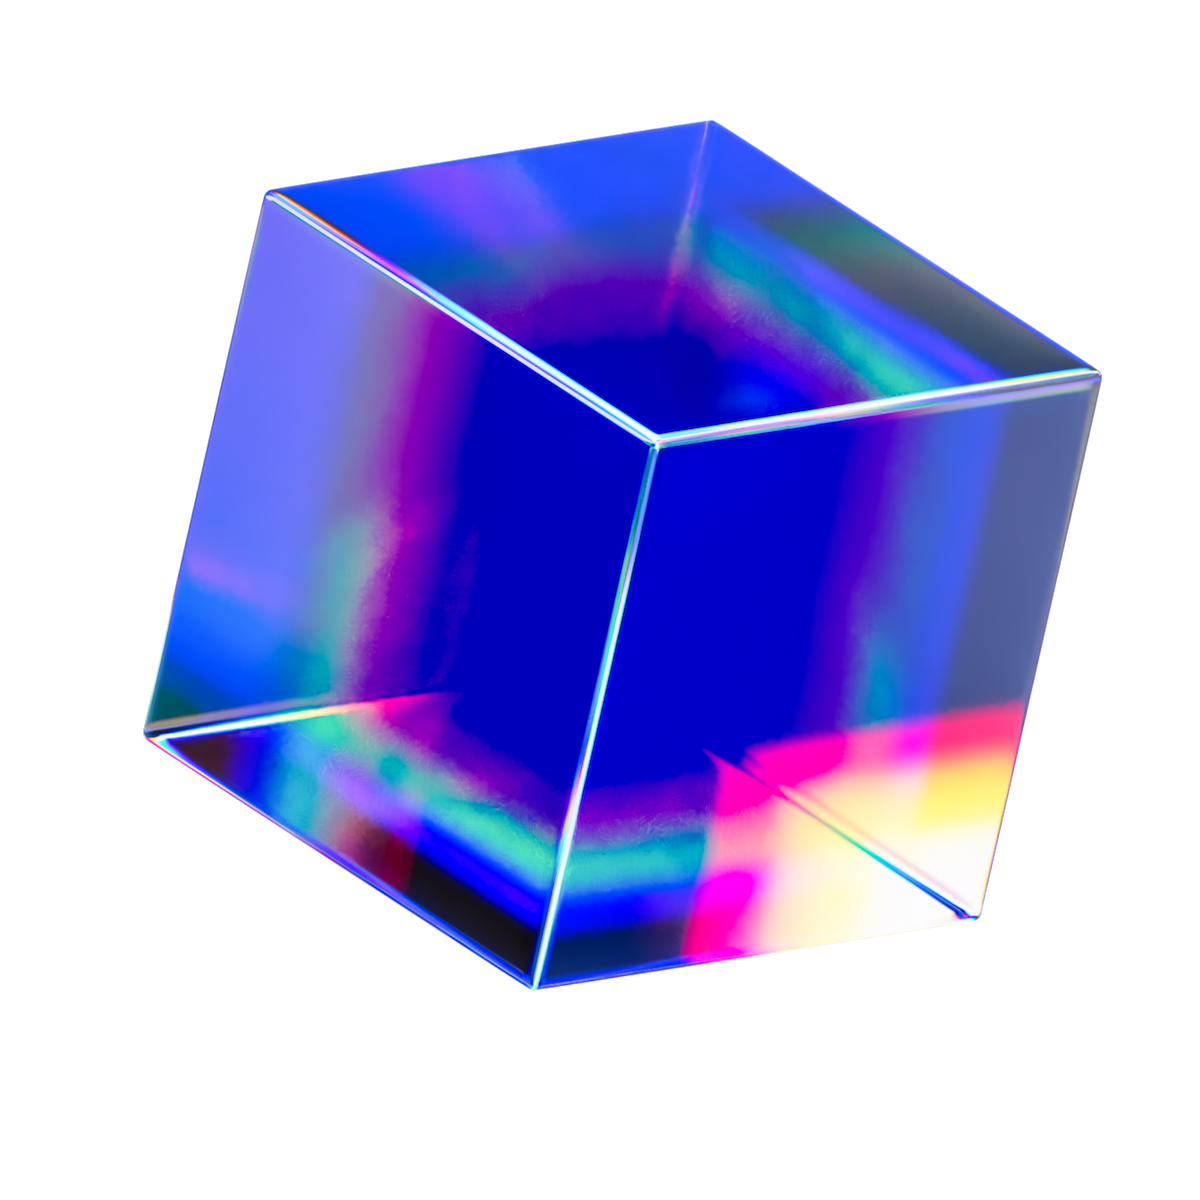 A colorful square